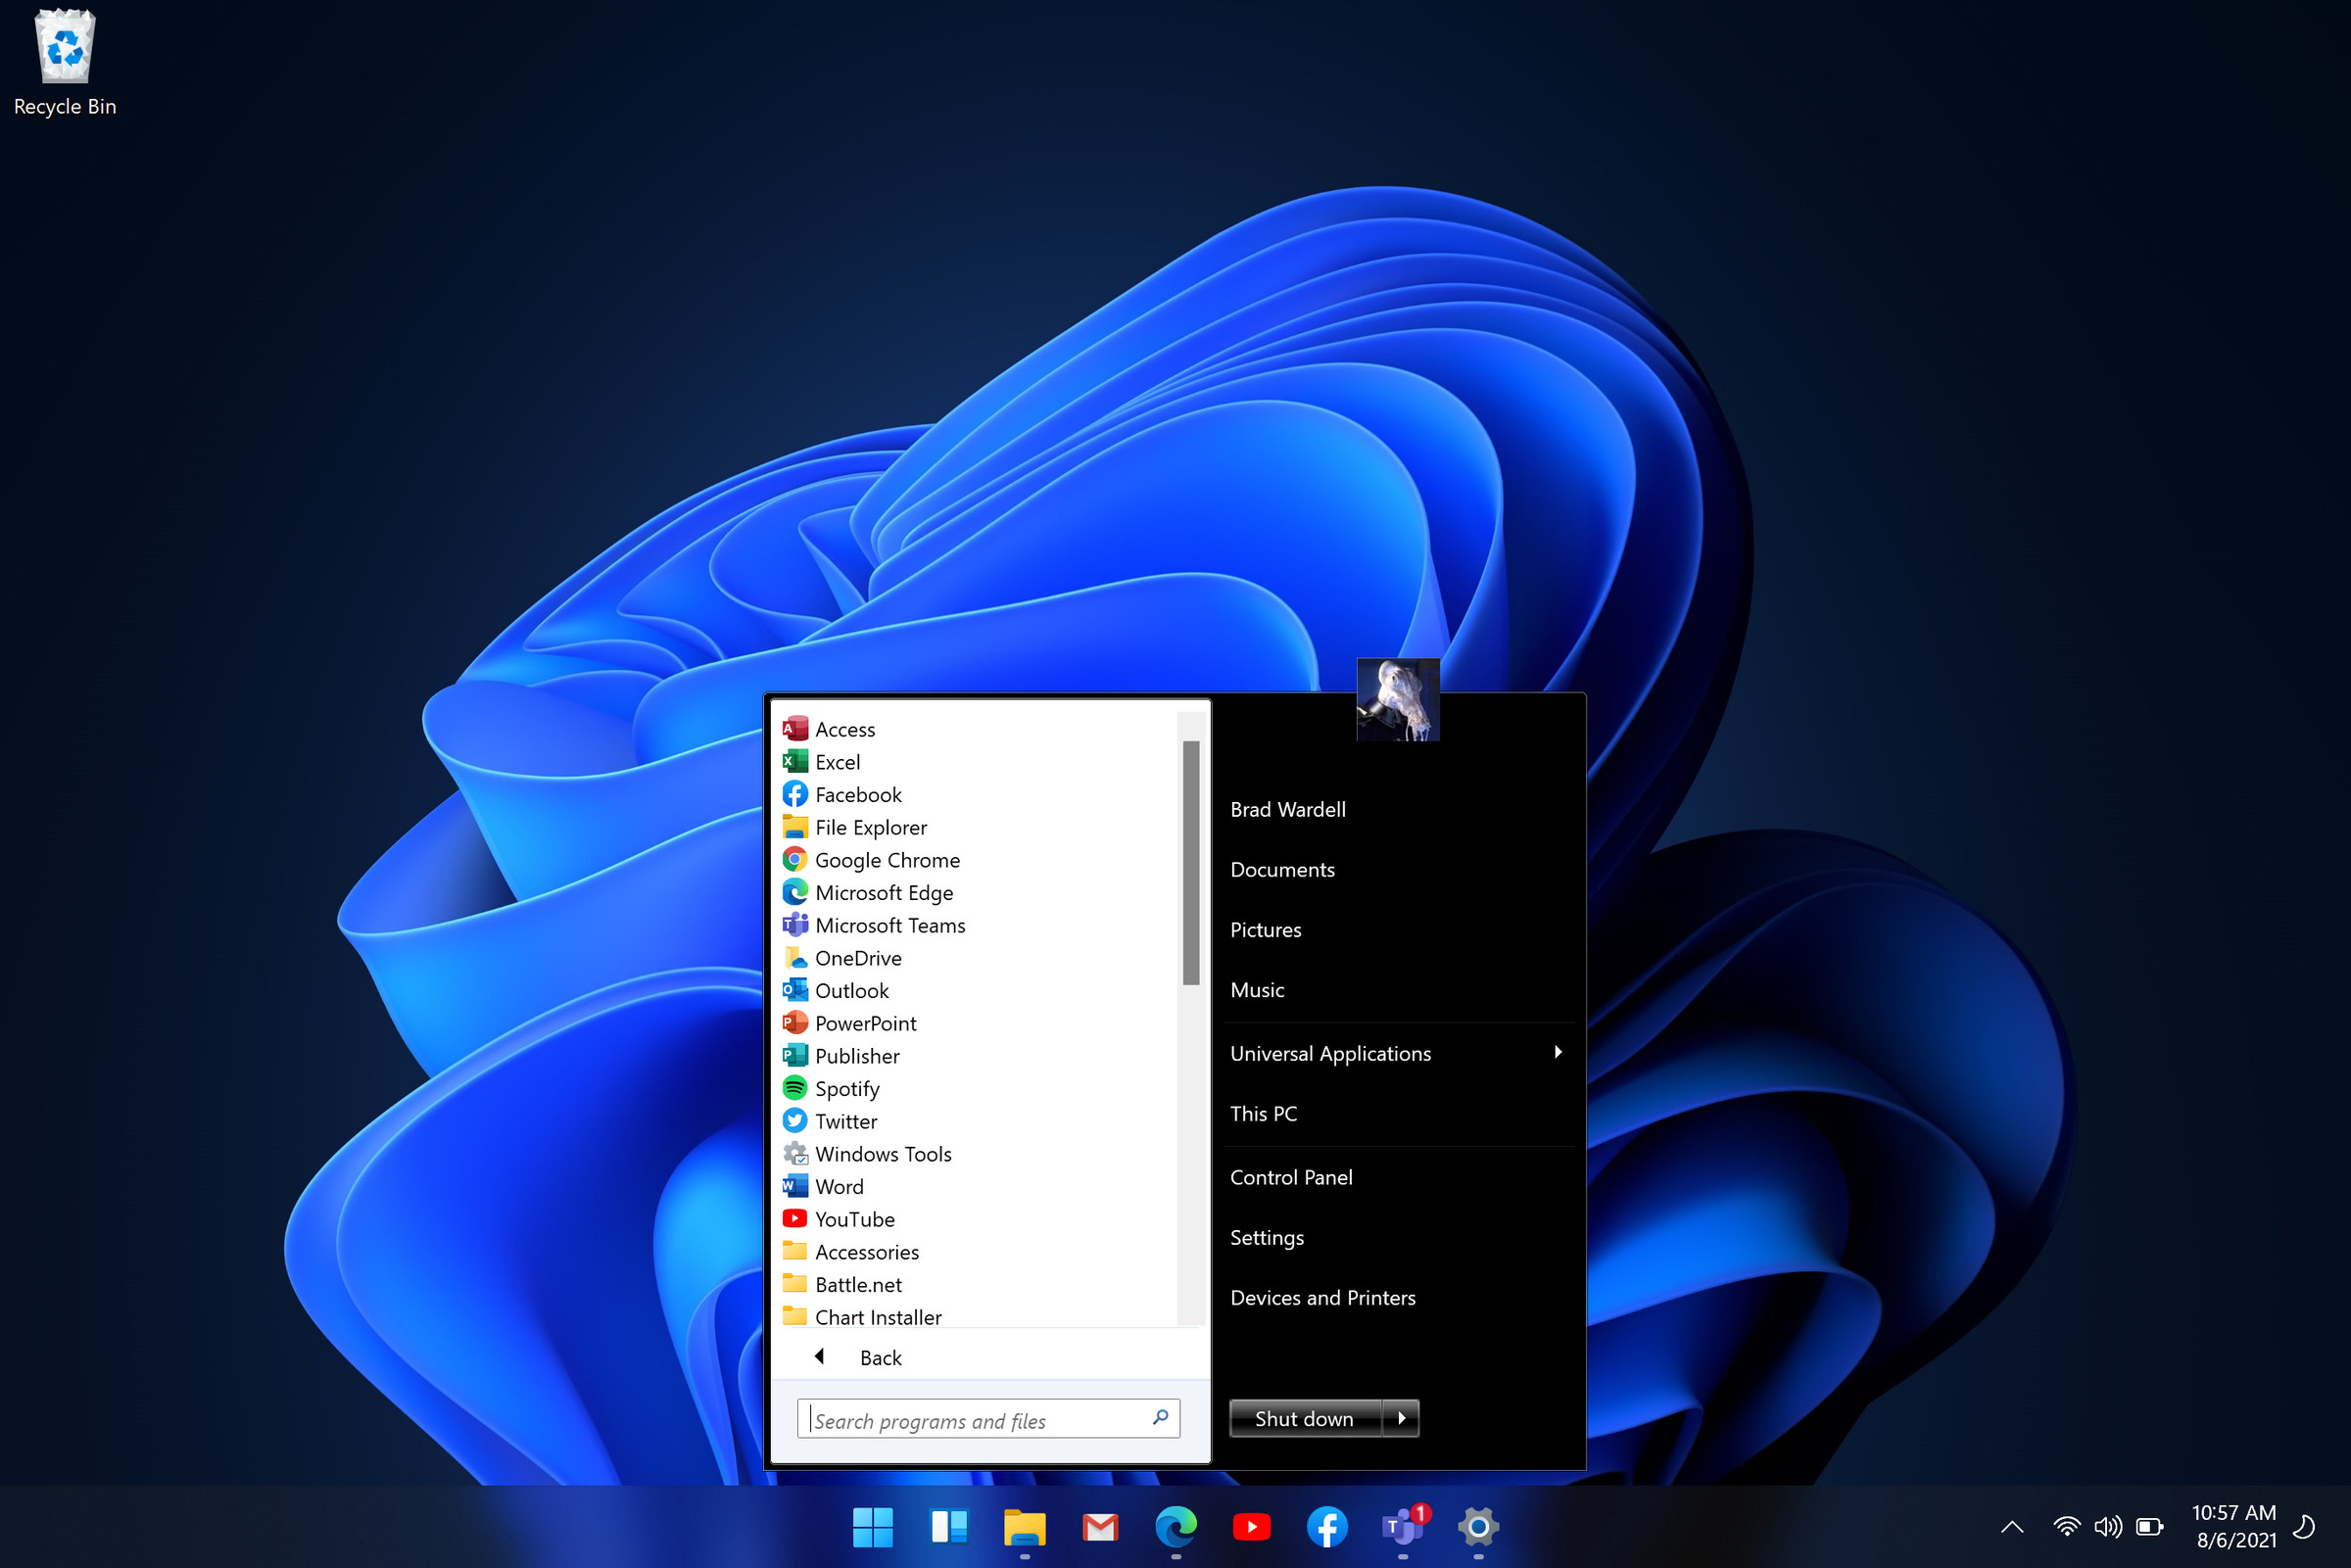 Start11’s Windows 7-style Start menu.